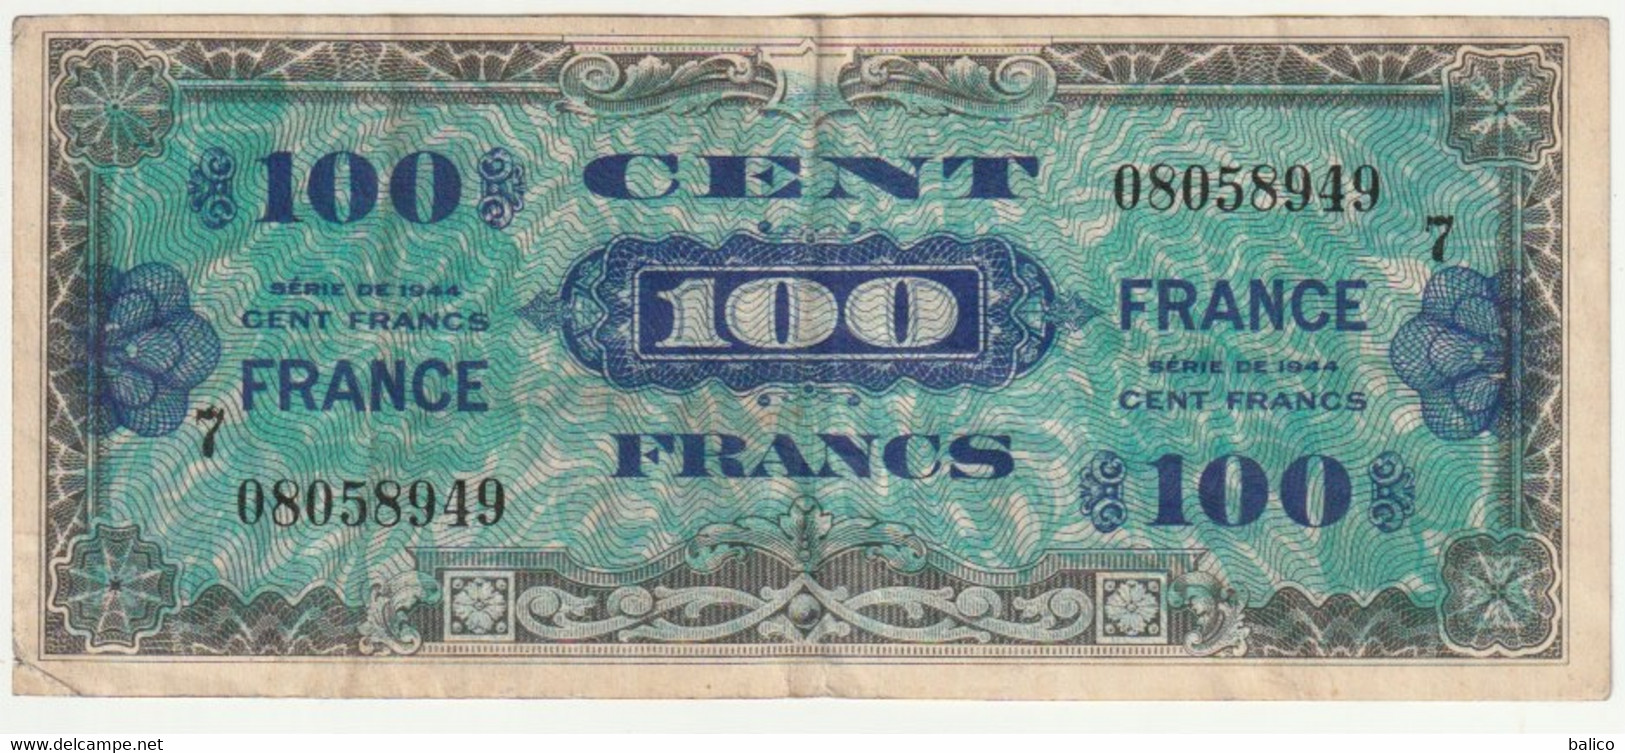 France, 100 Francs   1944   N° 08058949 - 1944 Flag/France